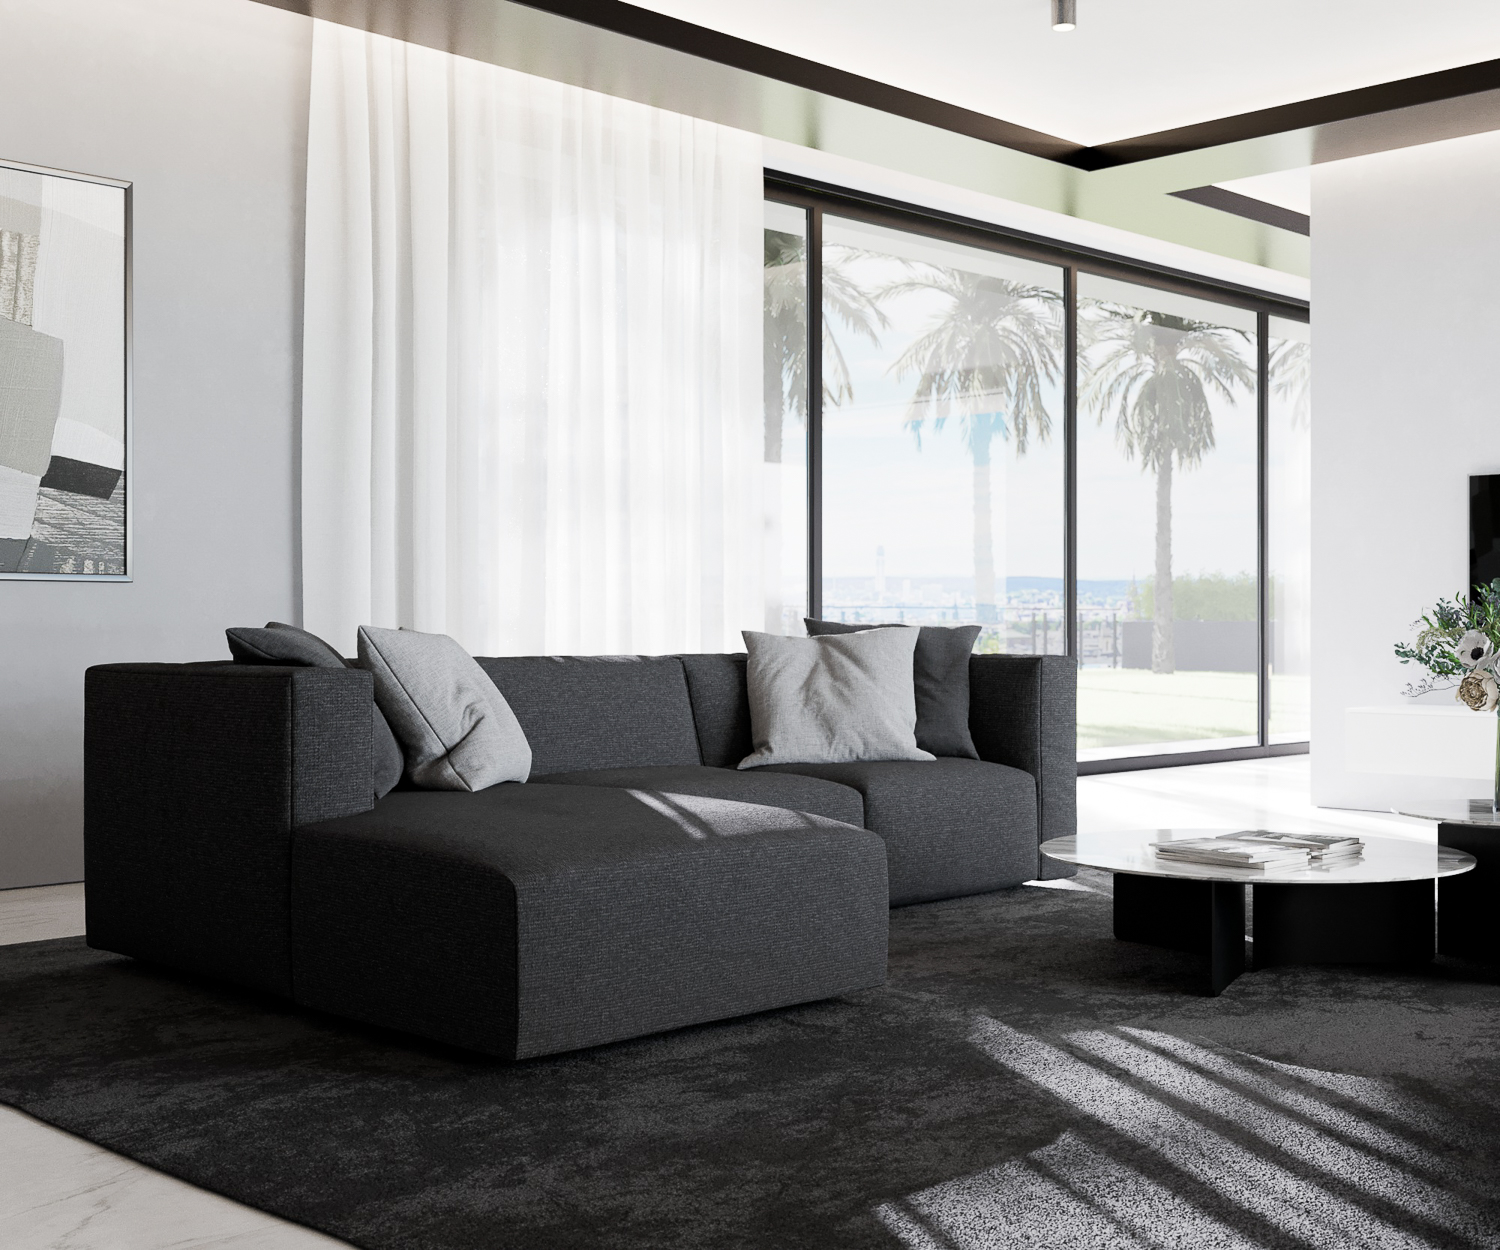 Prostoria Match L Designer Sofa mit Recamiere grauer stoffbezug schwarz grau bequem komfortabel von der seite